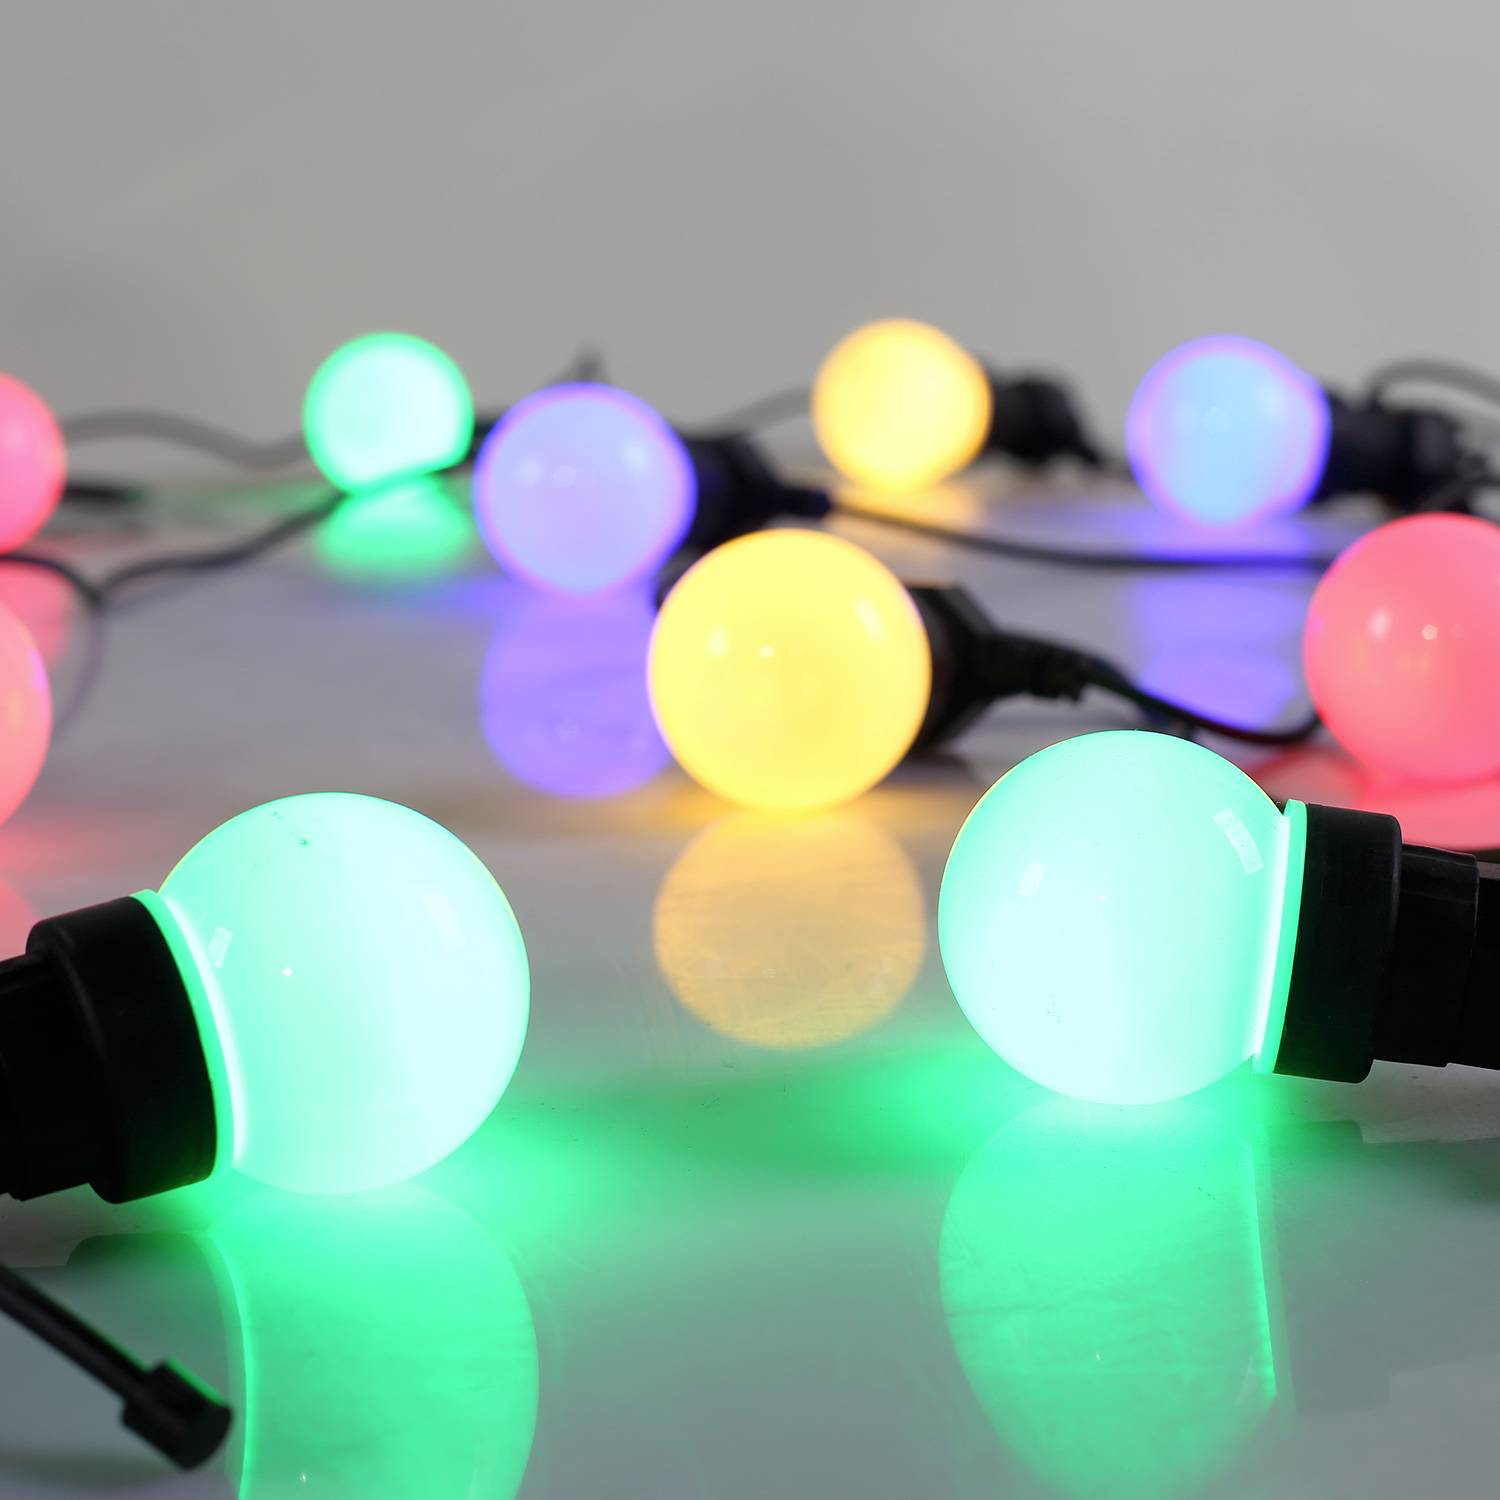 HERACLES - Ghirlanda da esterno con 10 lampadine, 50 LED multicolori, funzionamento a batterie (non incluse), funzione timer, 8 modalità, lunghezza 4,5 m Photo5